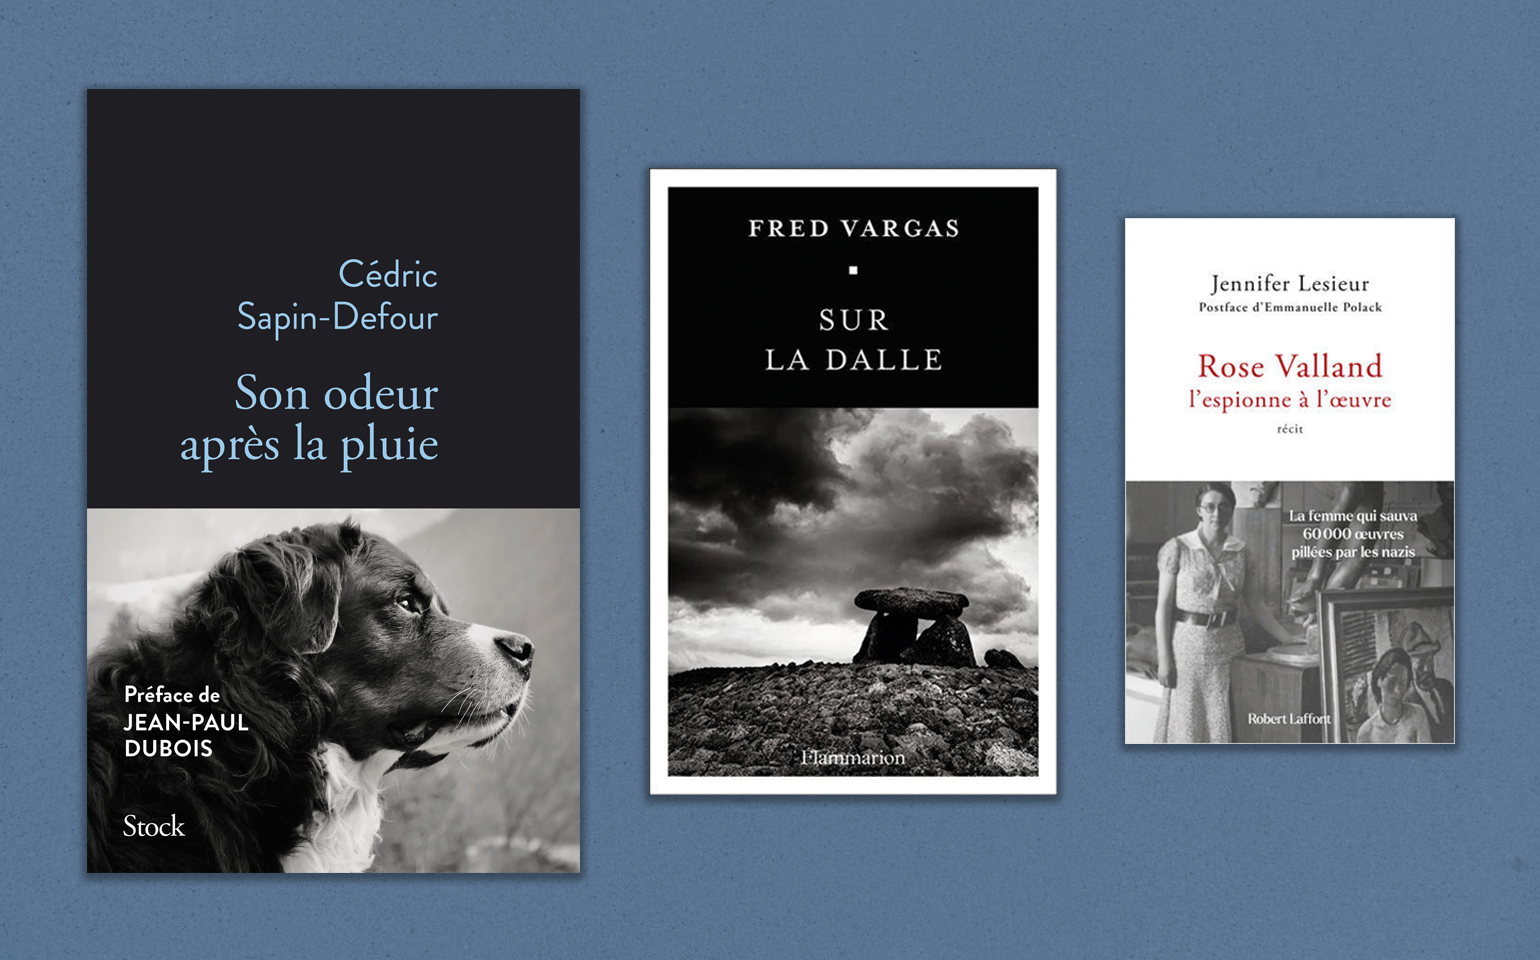 « Son odeur après la pluie », de Cédric Sapin-Defour, « Sur la dalle », de Fred Vargas, et «Rose Valland, l'espionne à l'œuvre », de Jennifer Lesieur.